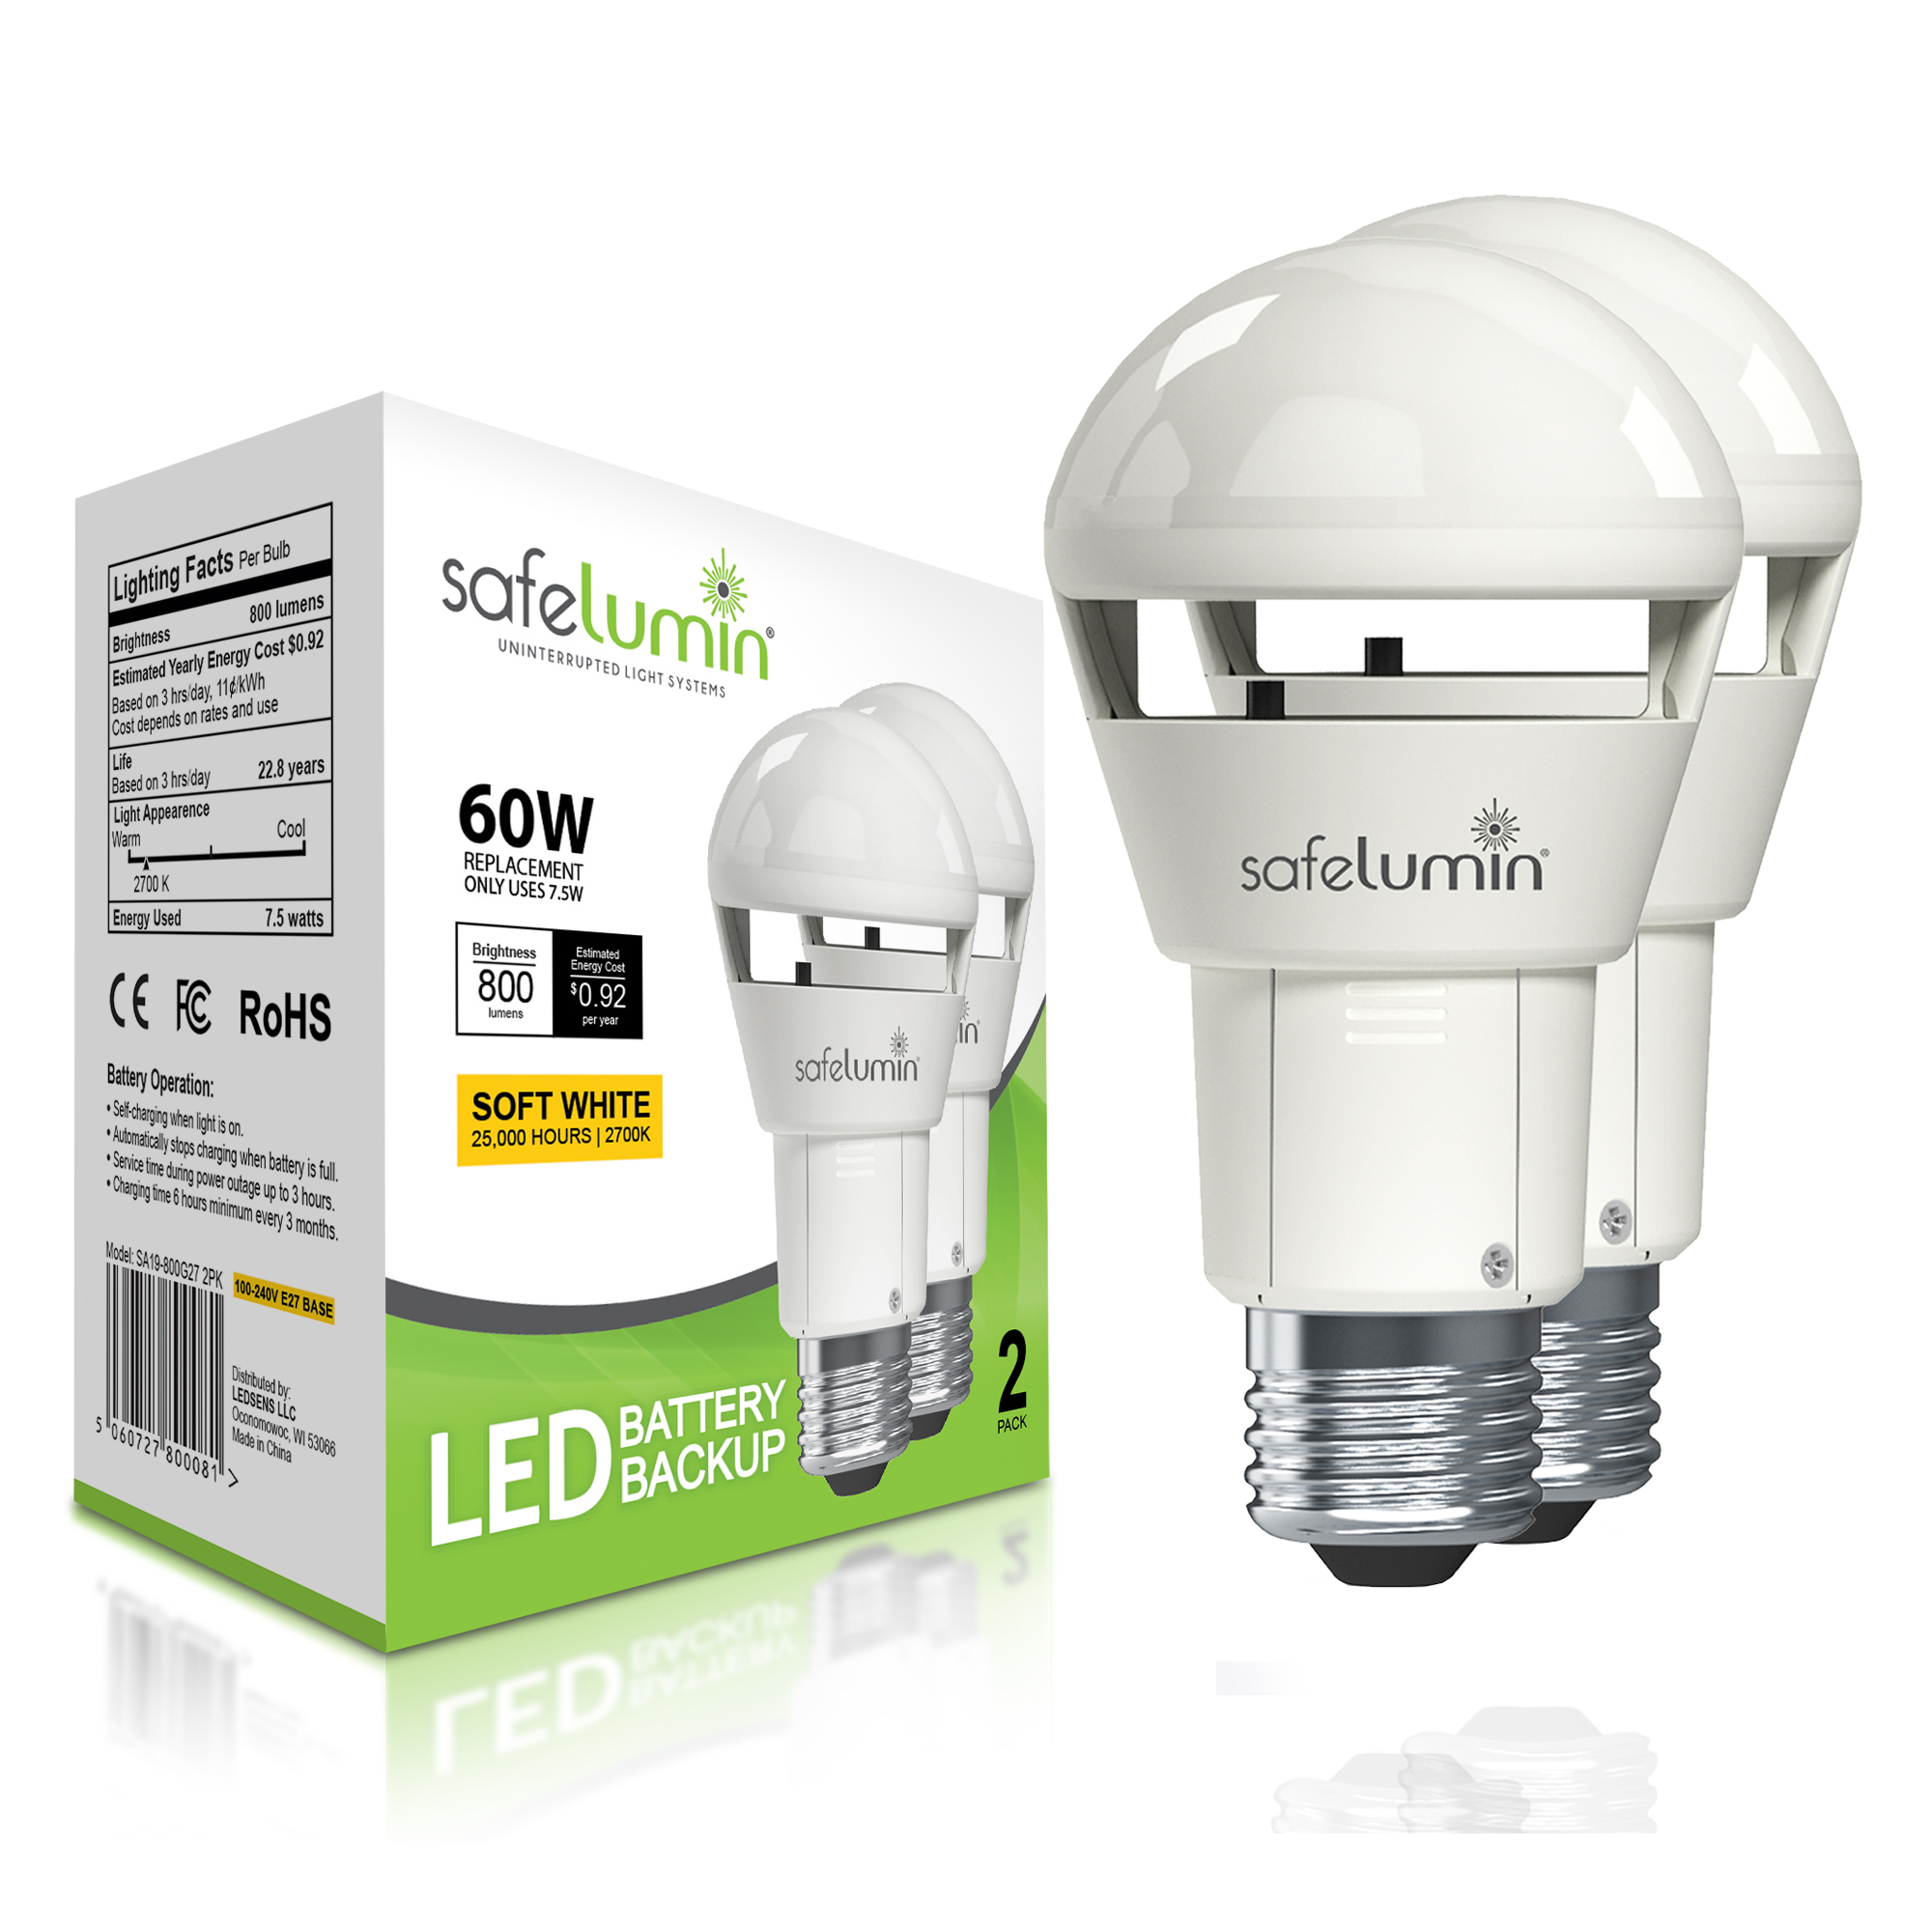 Safelumin SA19-800G27 2pk Emergency Rechargeable Light Bulbs for Home Power Failure, Works As Normal LED Light Bulb & 3hrs Battery Backup, 100-240V